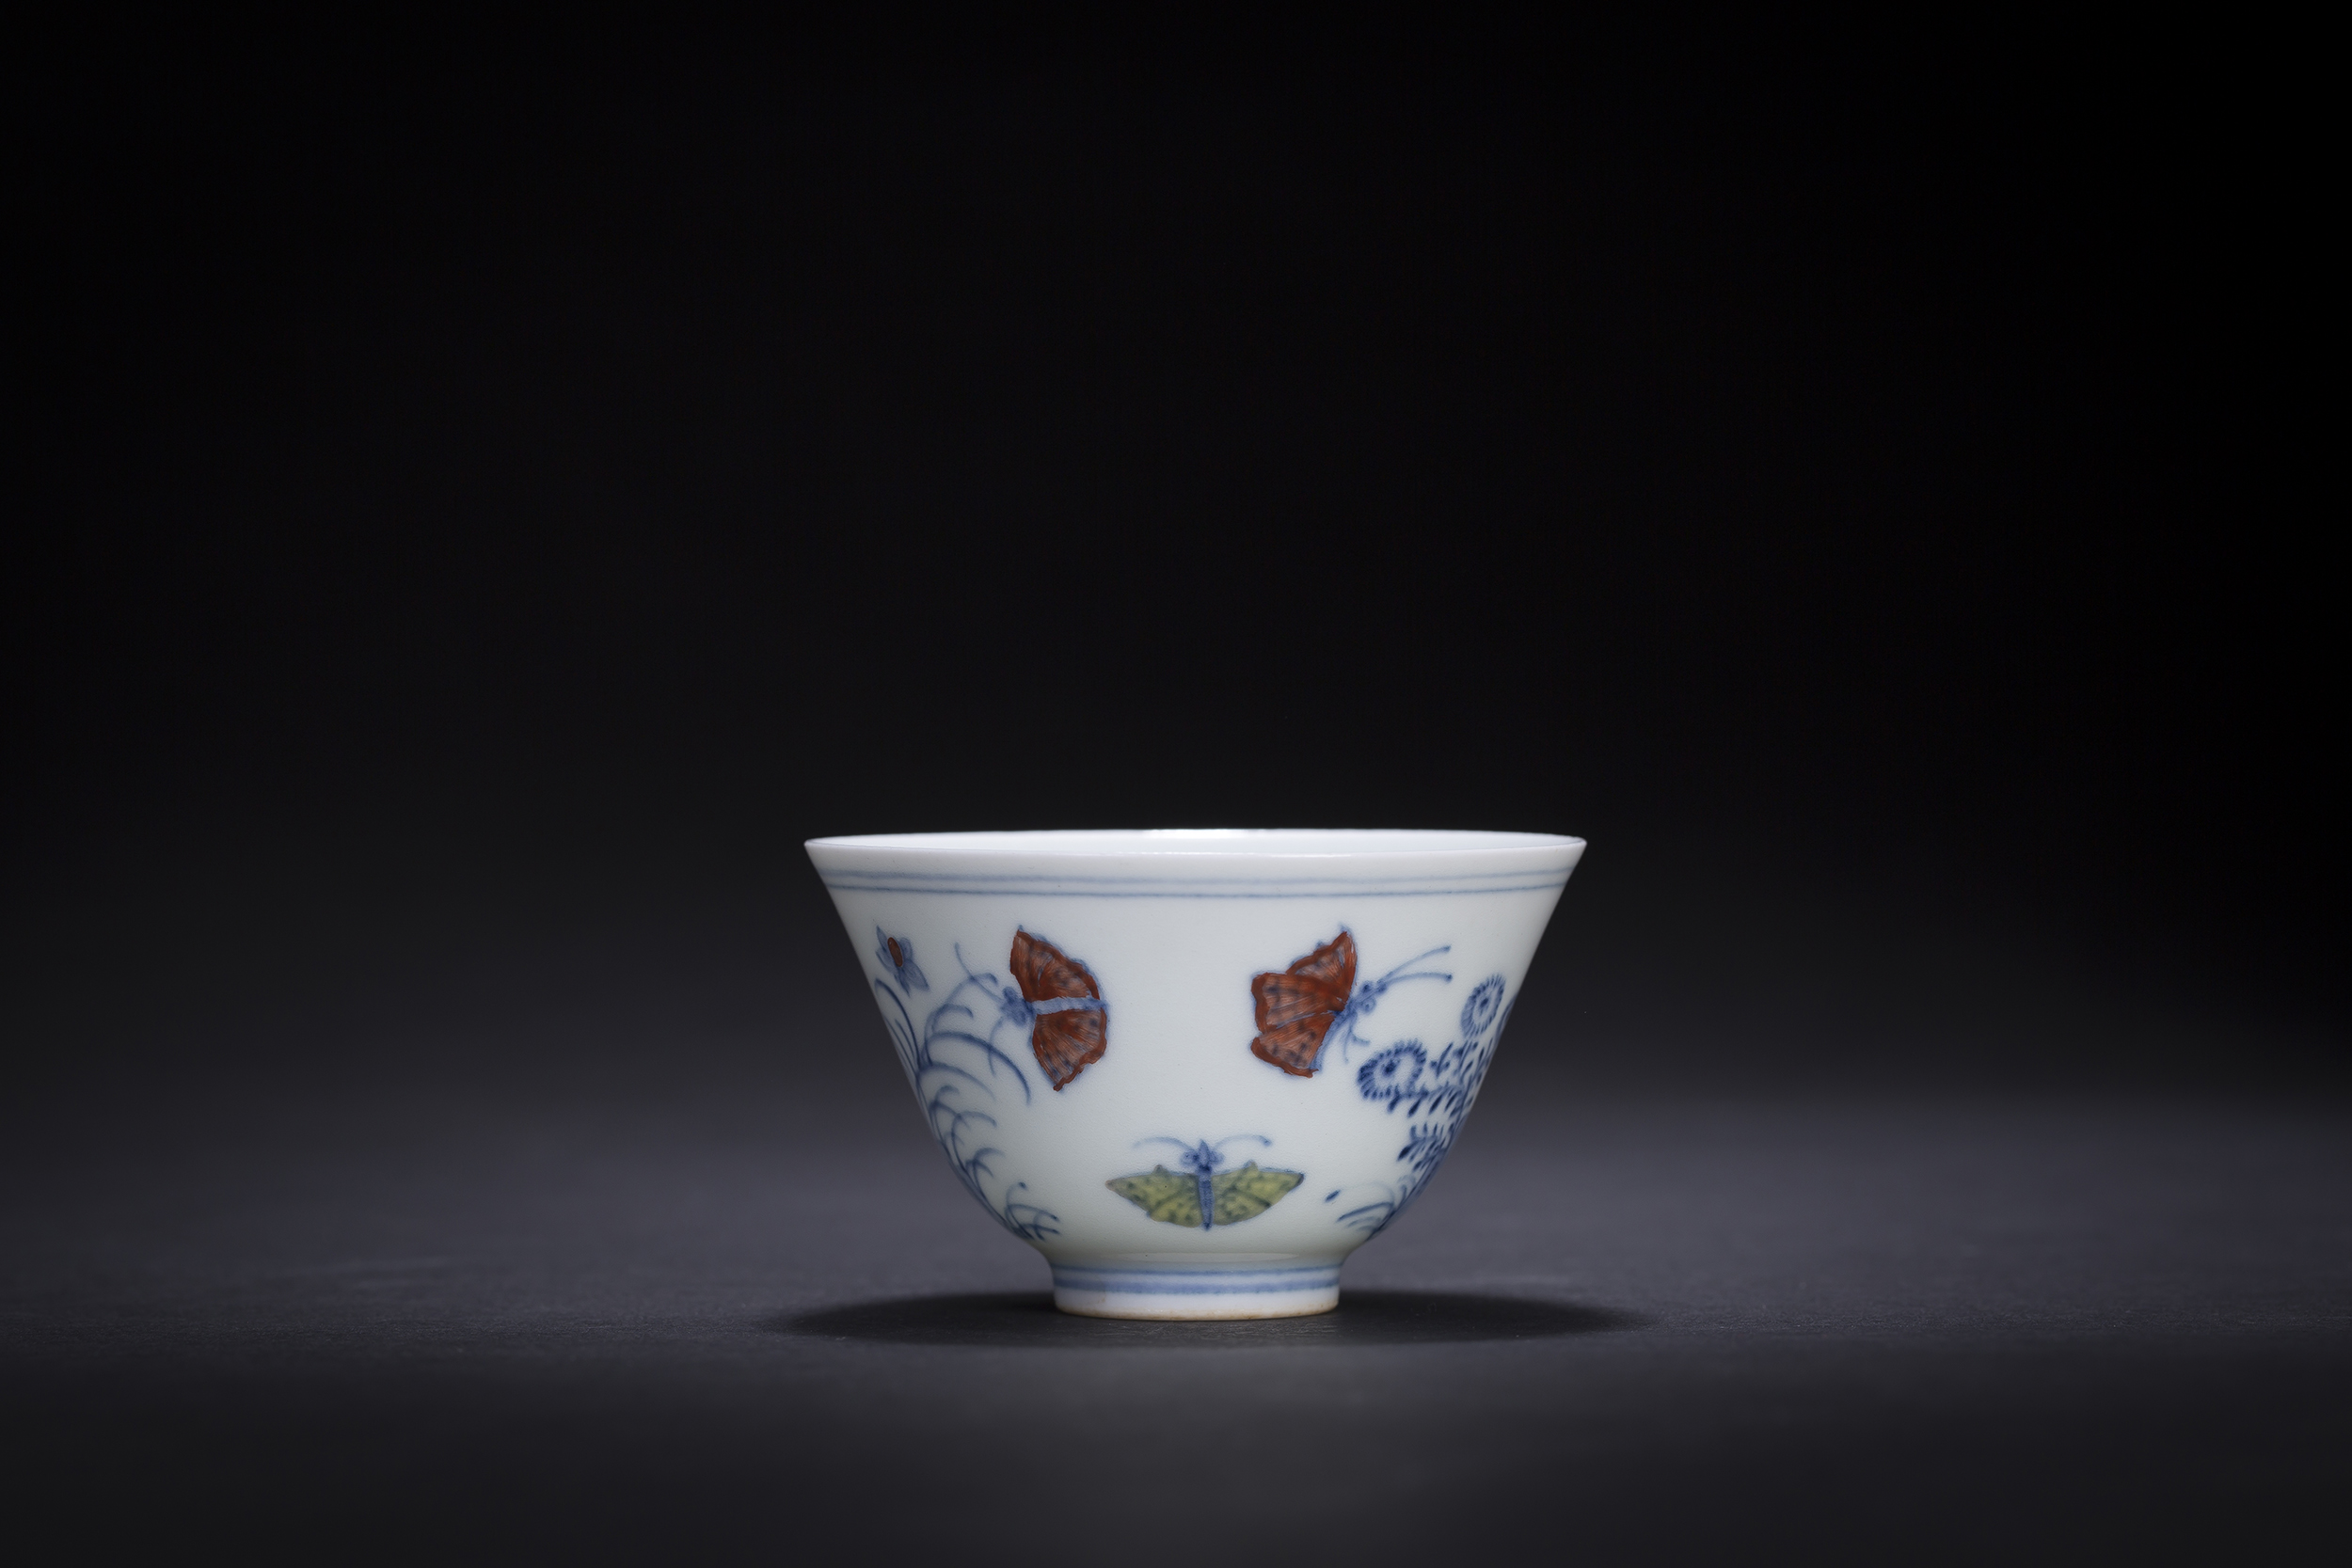 御成陶瓷亮相景德镇国际陶瓷博览会北京潘家园第三届陶瓷文化周